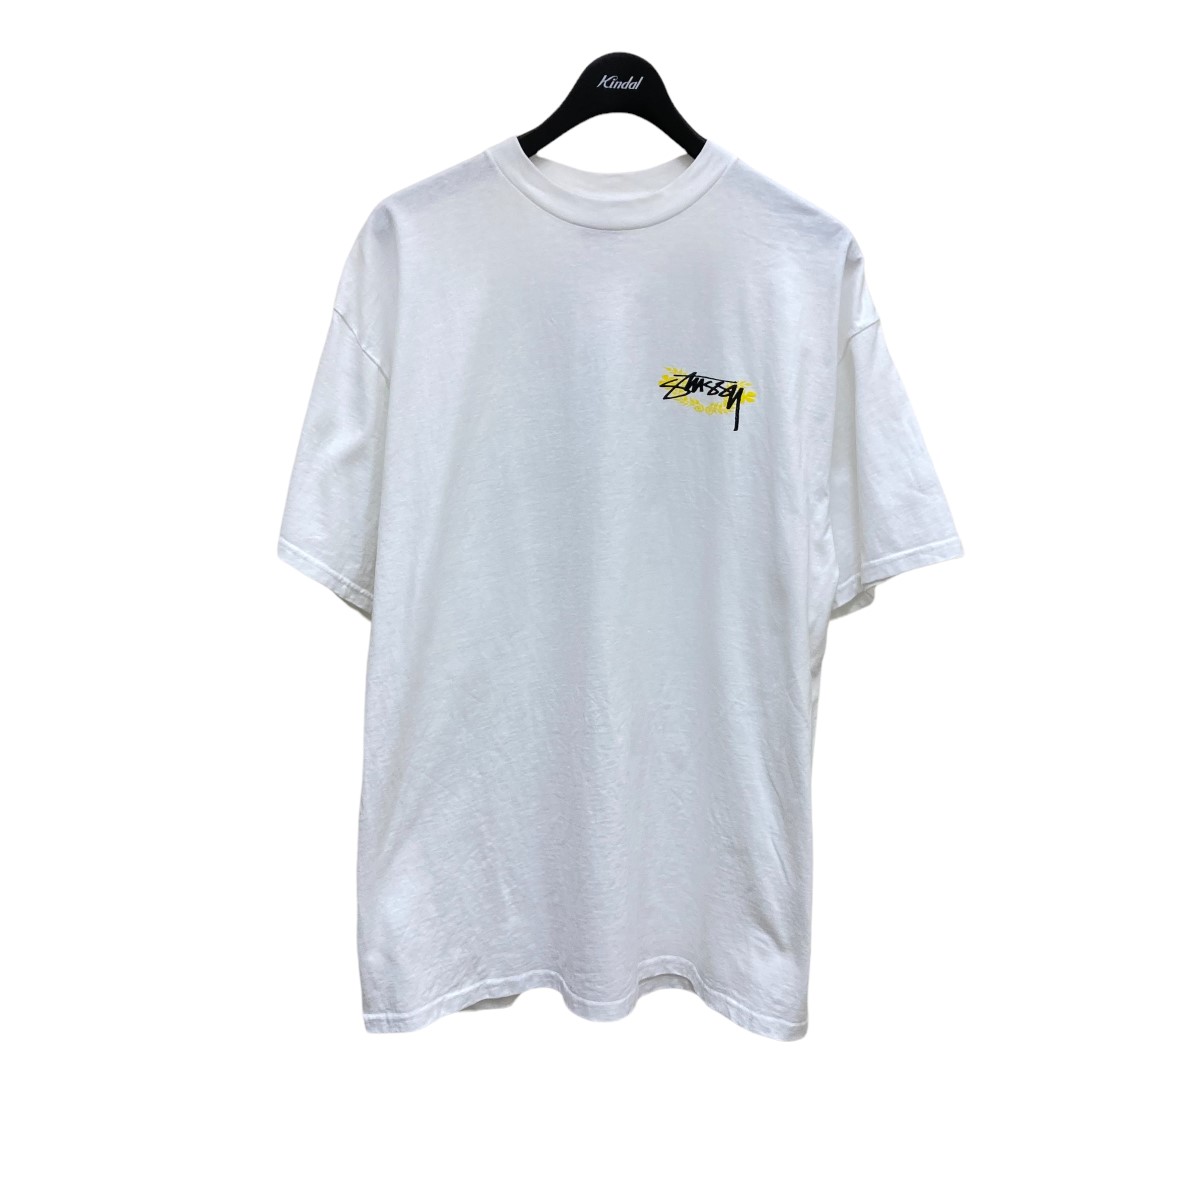 トップス, Tシャツ・カットソー Stussy COLLAGE SKULL T XL 040422